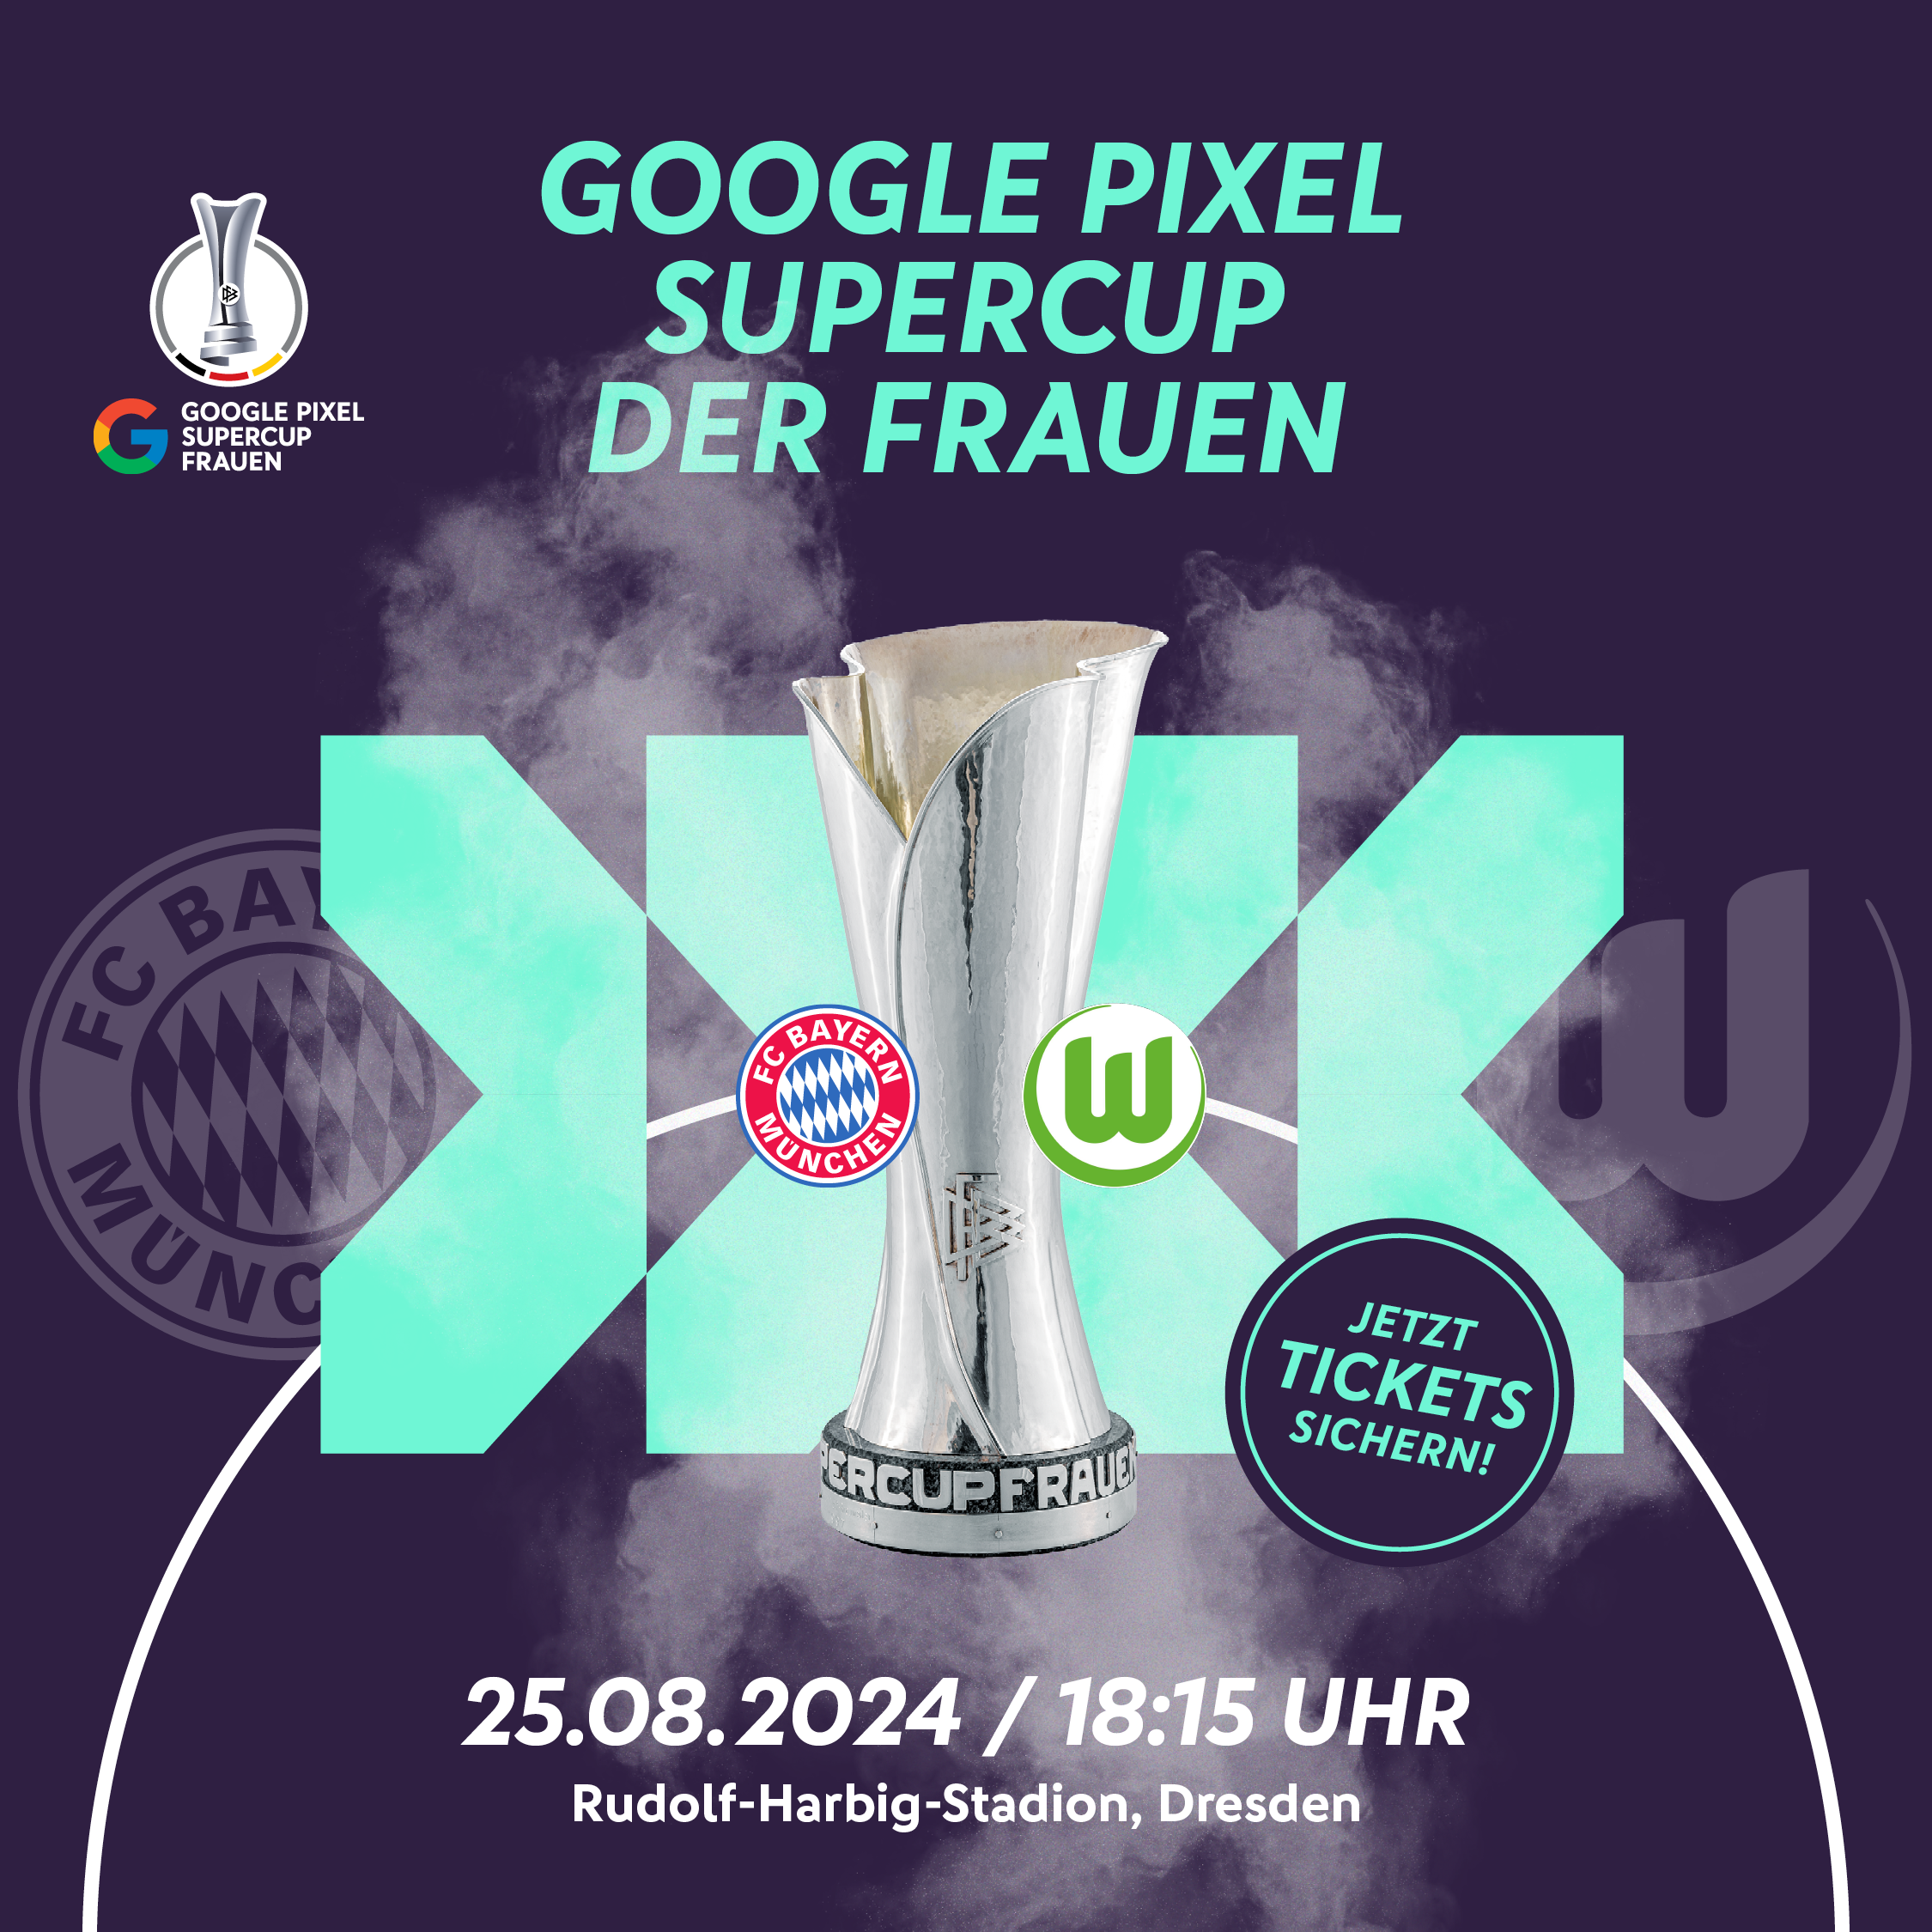 Google Pixel Supercup der Frauen FC Bayern München vs. VfL Wolfsburg